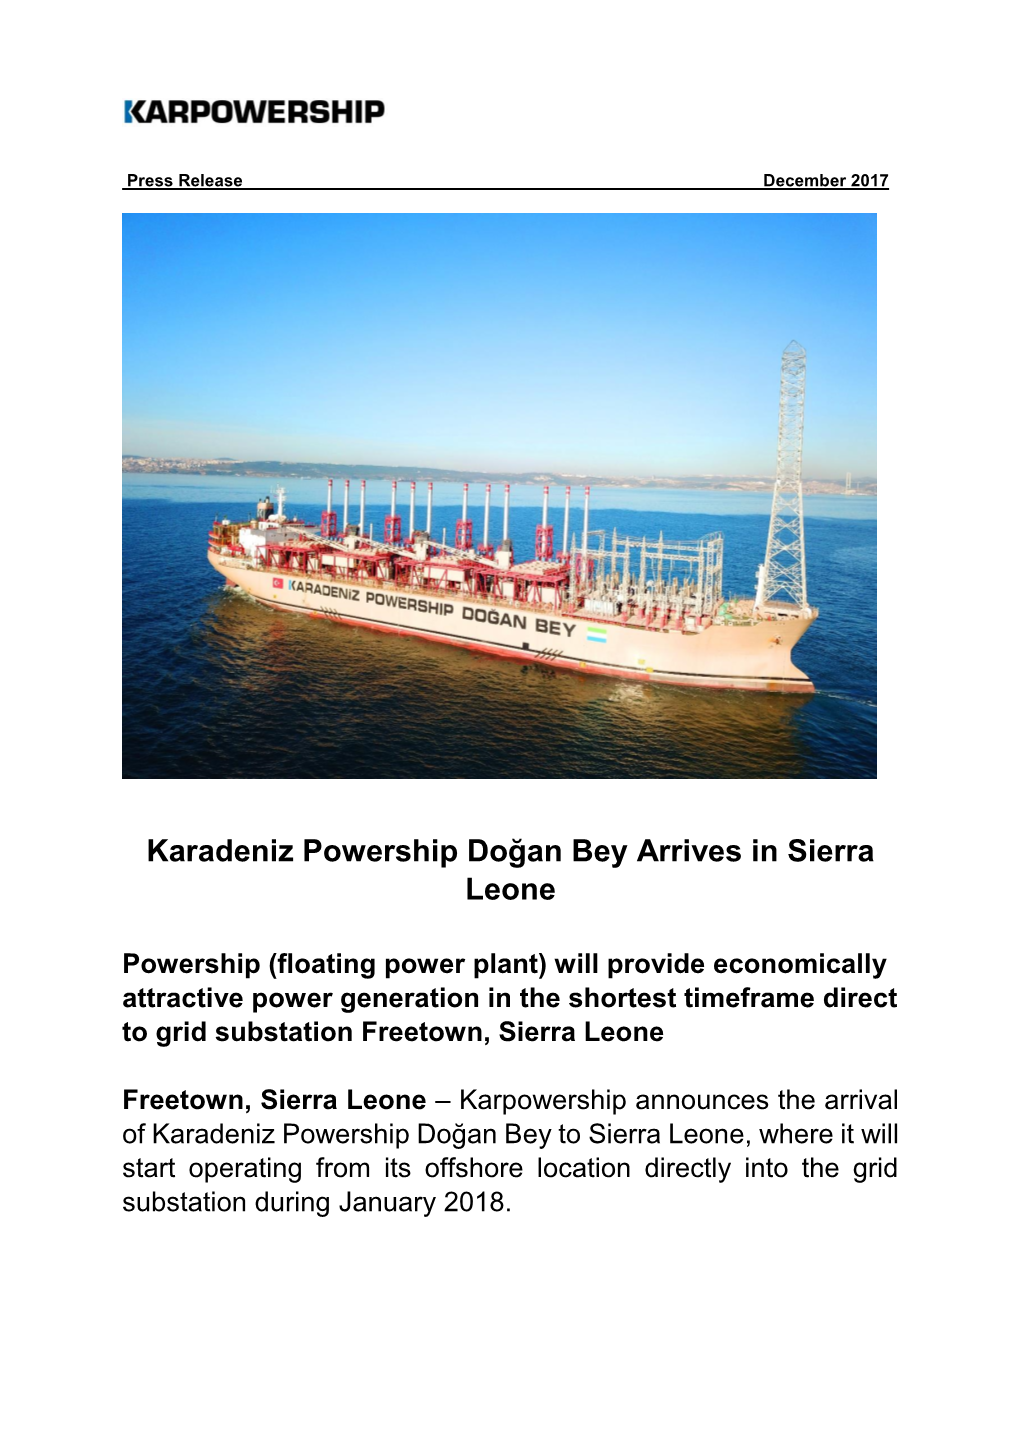 Karadeniz Powership Doğan Bey Arrives in Sierra Leone